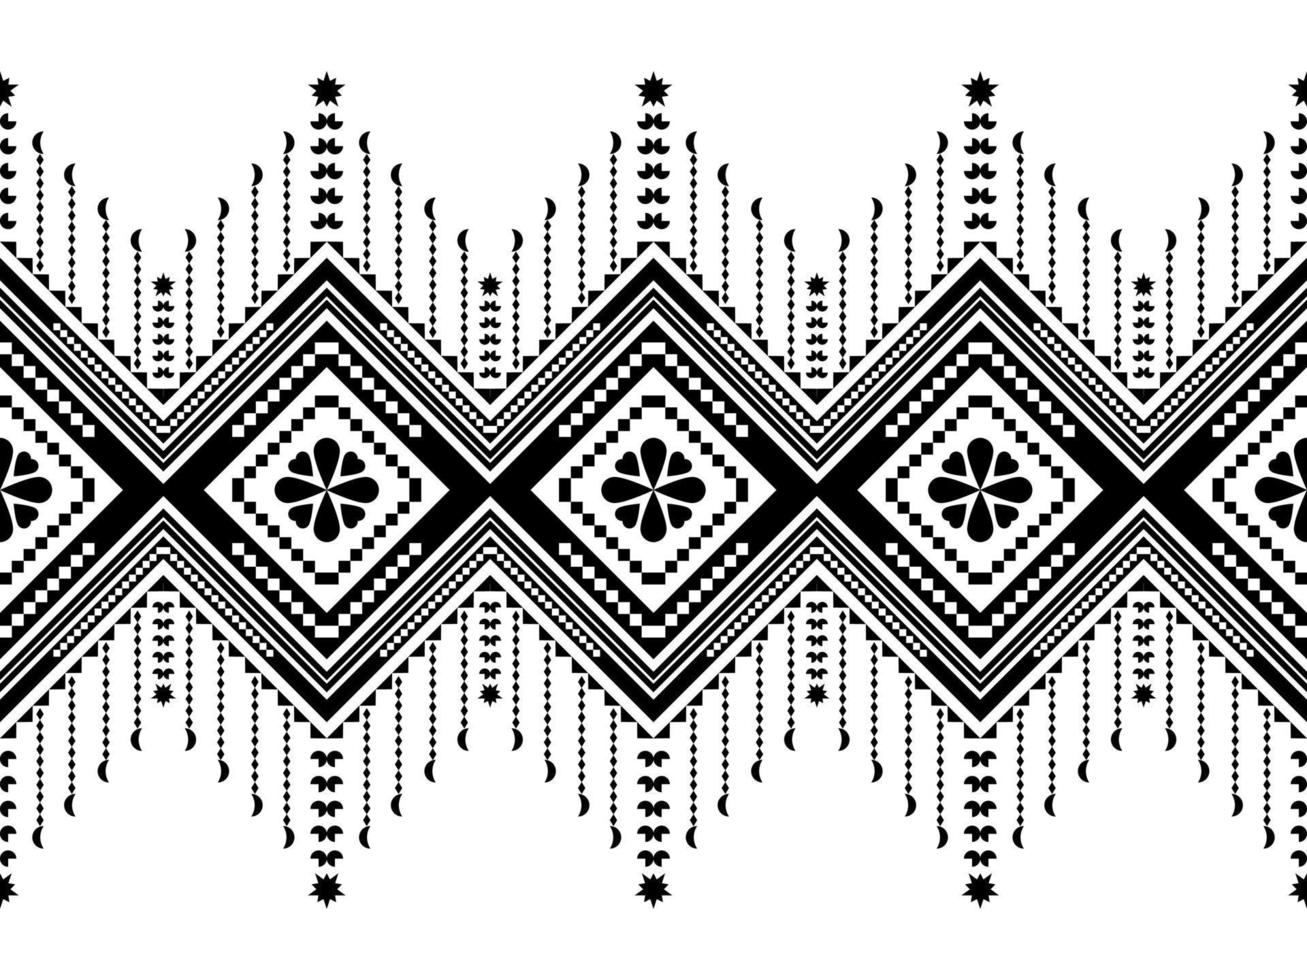 design de padrão geométrico étnico abstrato para plano de fundo ou wallpaper.ethnic impressão geométrica padrão design asteca repetindo a textura de fundo em preto e branco. tecido, design de pano, embrulho vetor